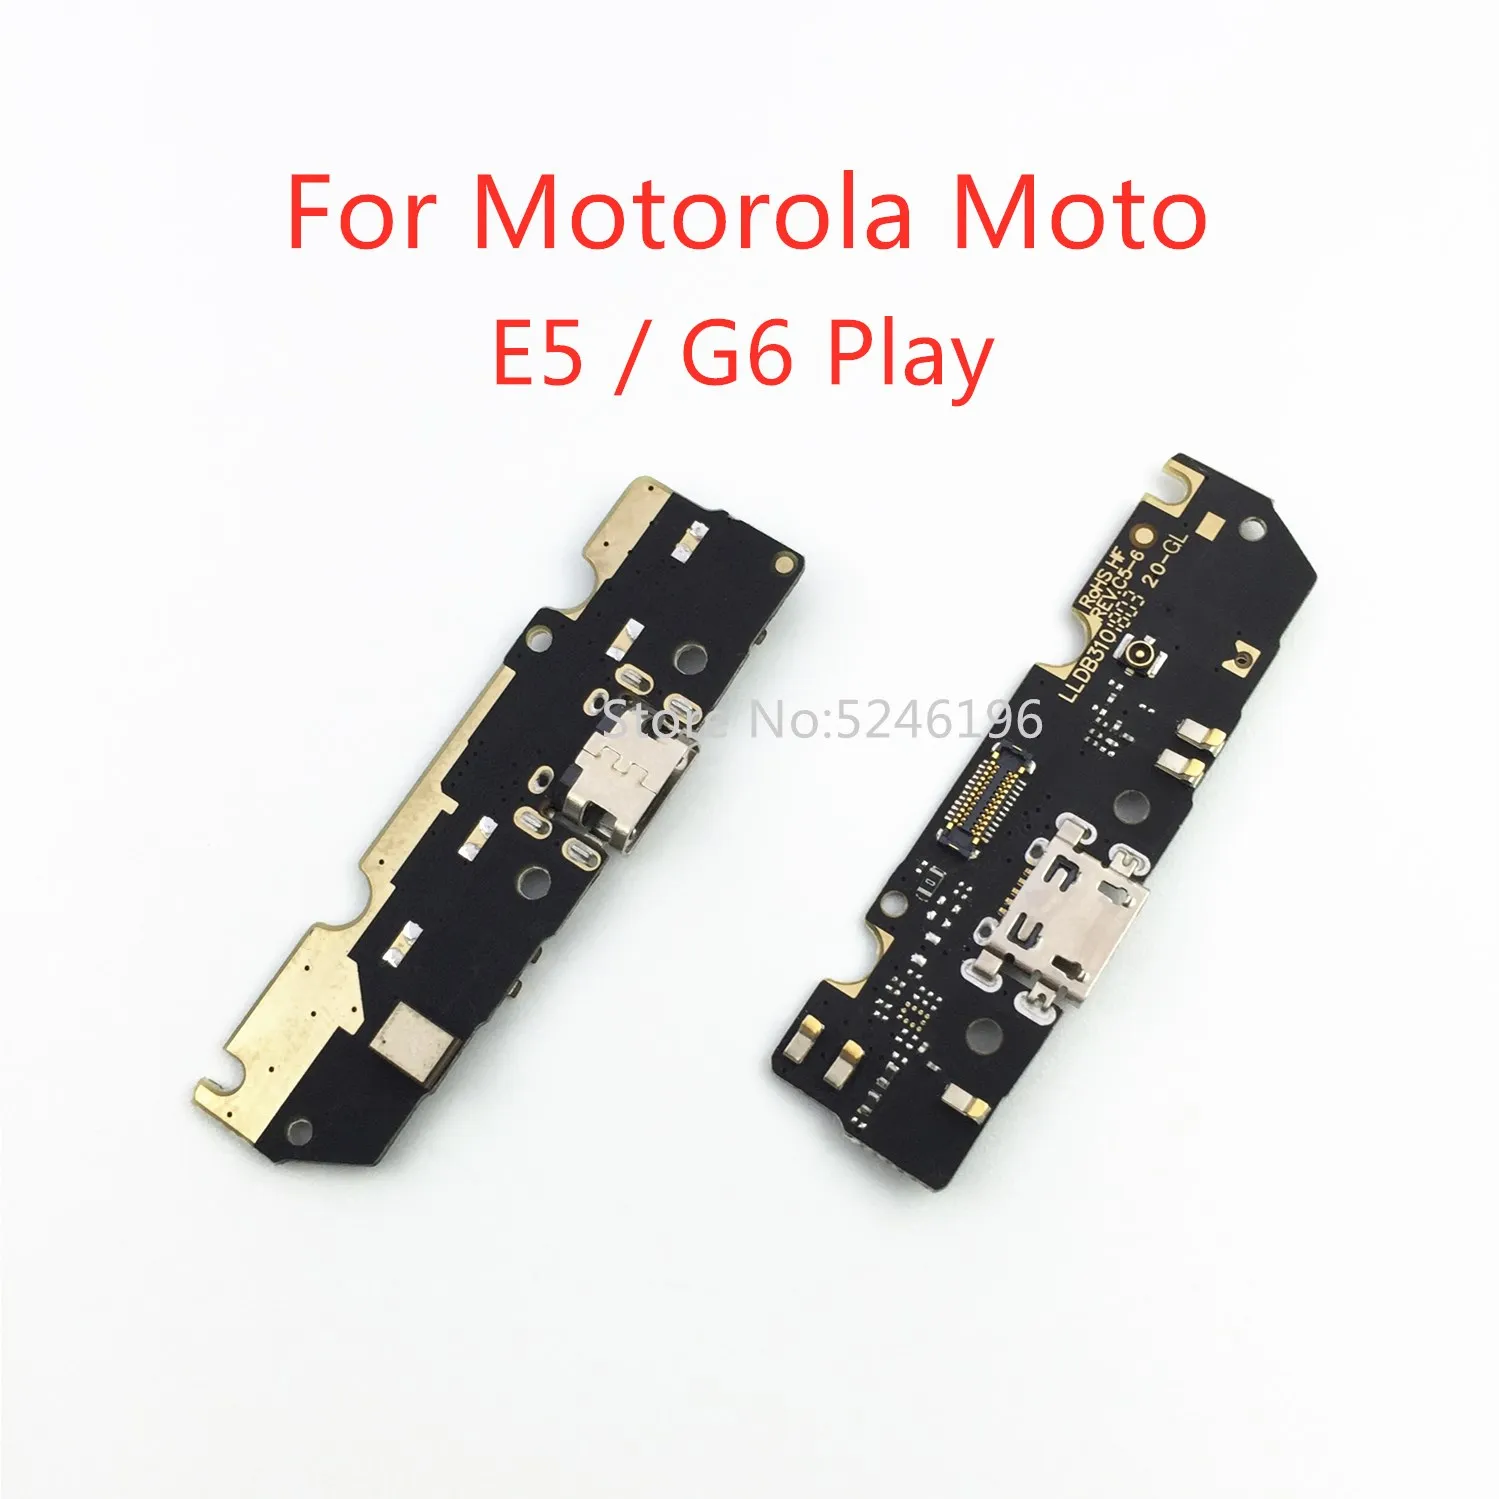 1 шт. Применимо к для Motorola Moto E5/G6 Play USB порт для зарядки базовый разъем зарядного устройства мягкий кабель Замена деталей